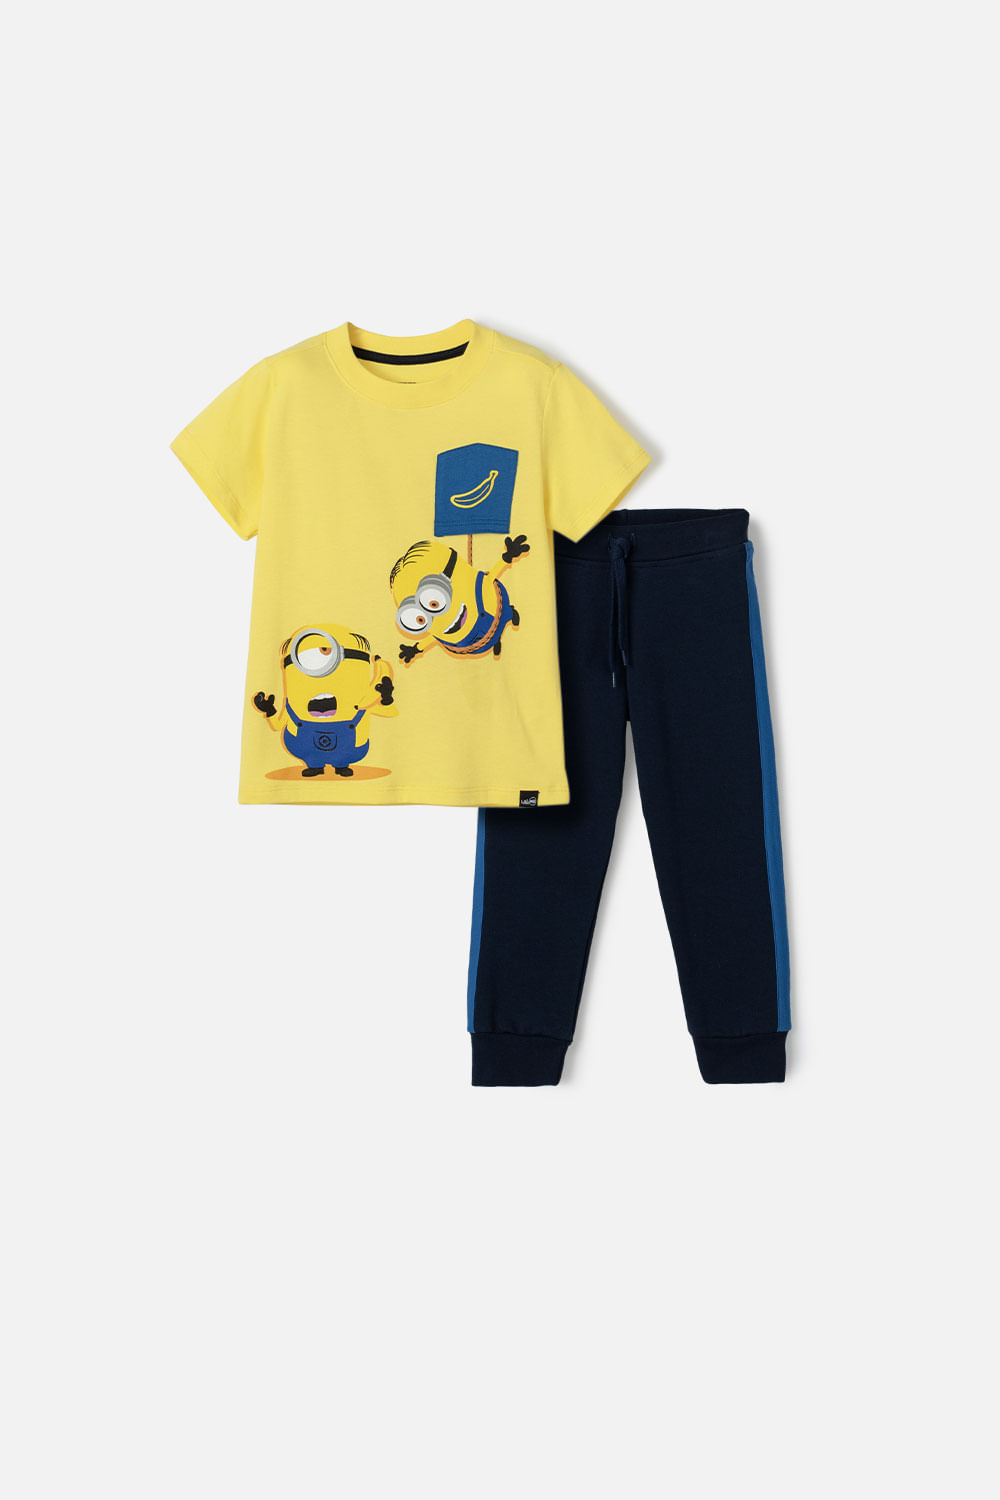 Conjunto de Los Minions amarillo y azul de pantalón largo para niño 2T a 5T 3T-0